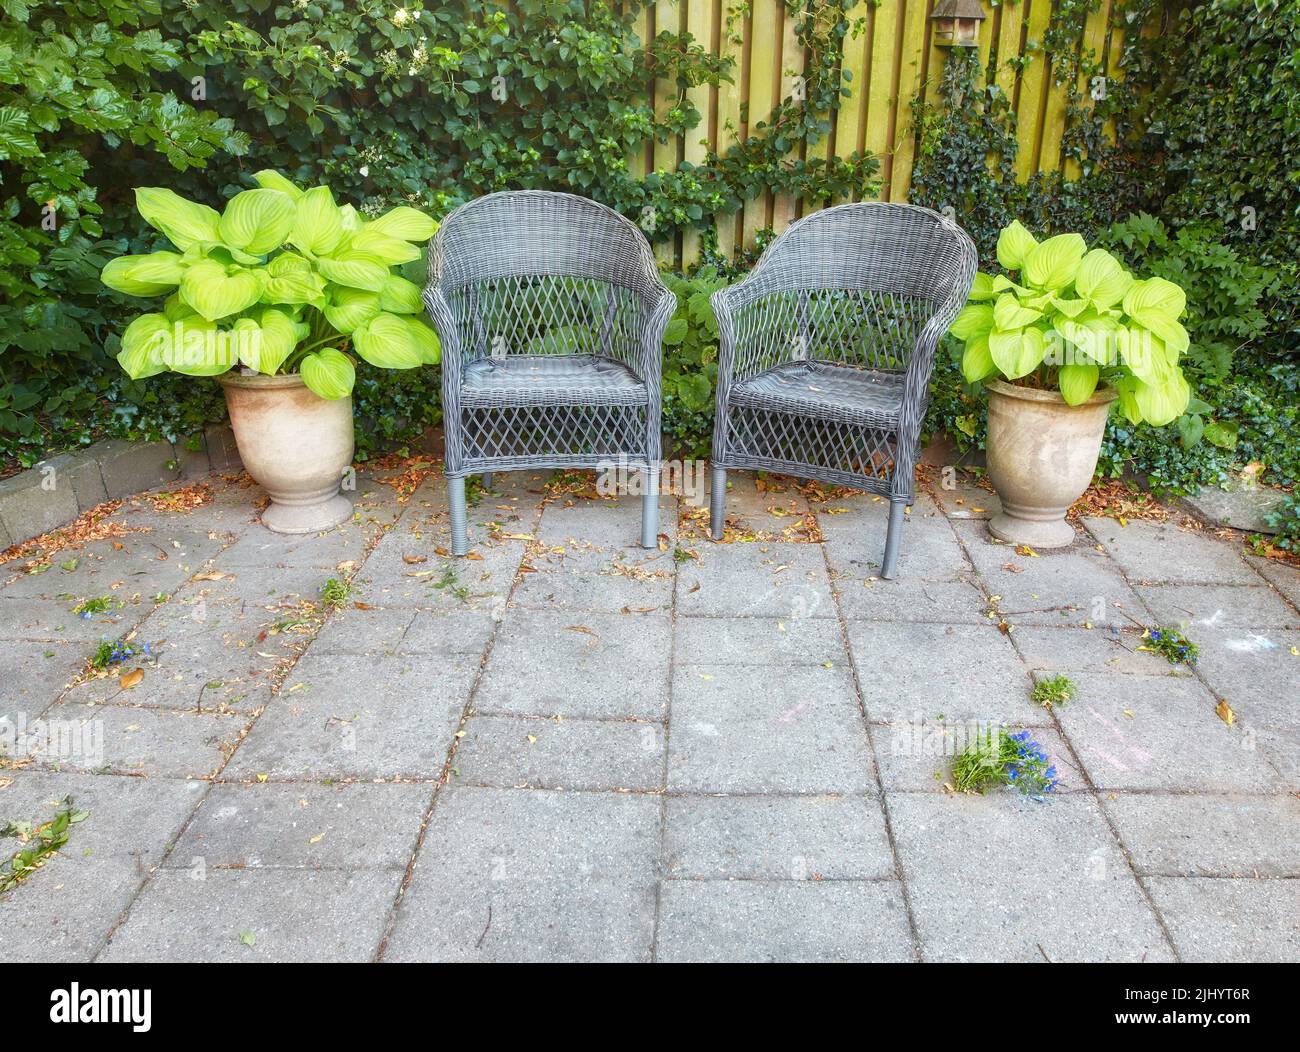 Tranquilo, sereno y acogedor patio es para que las personas se relajen y disfruten de la zona tranquila. Jardín al aire libre con sillas grises plantas en macetas verde alrededor y Foto de stock